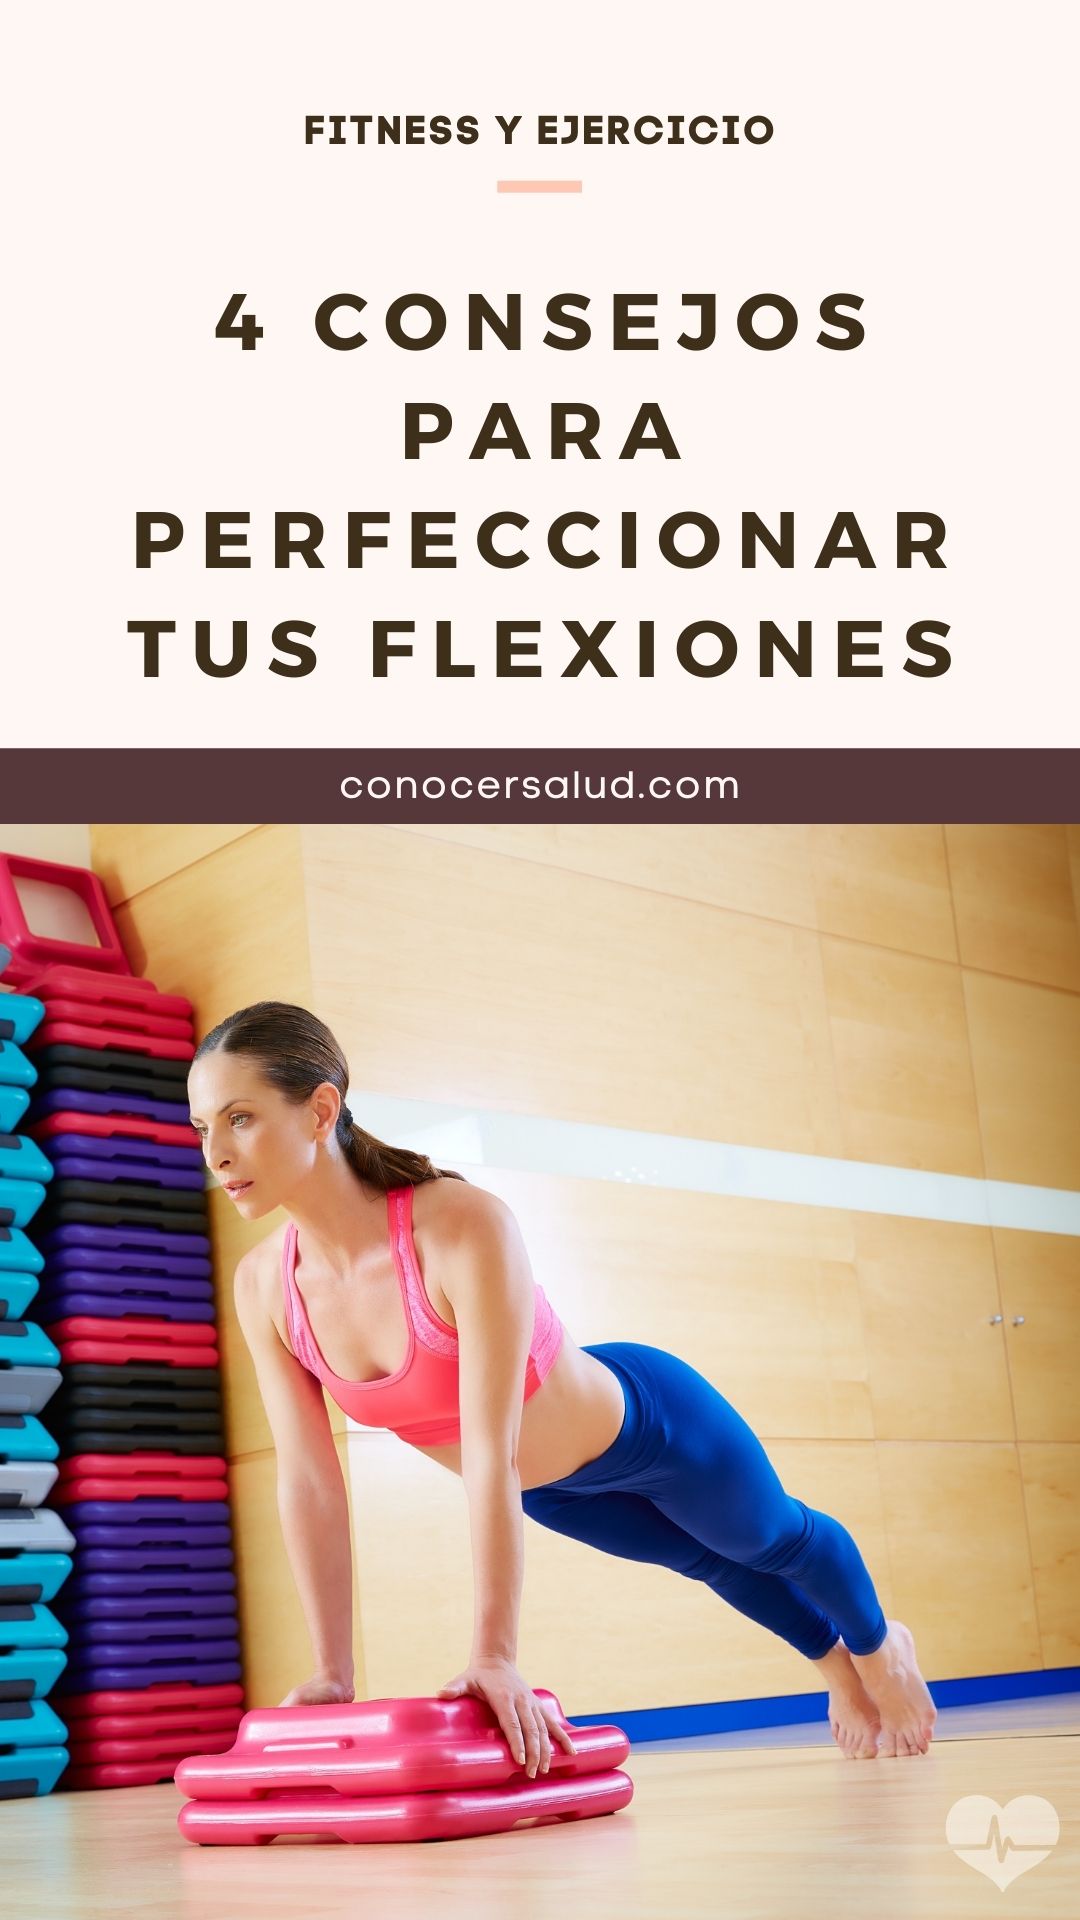 4 Consejos para perfeccionar tus flexiones